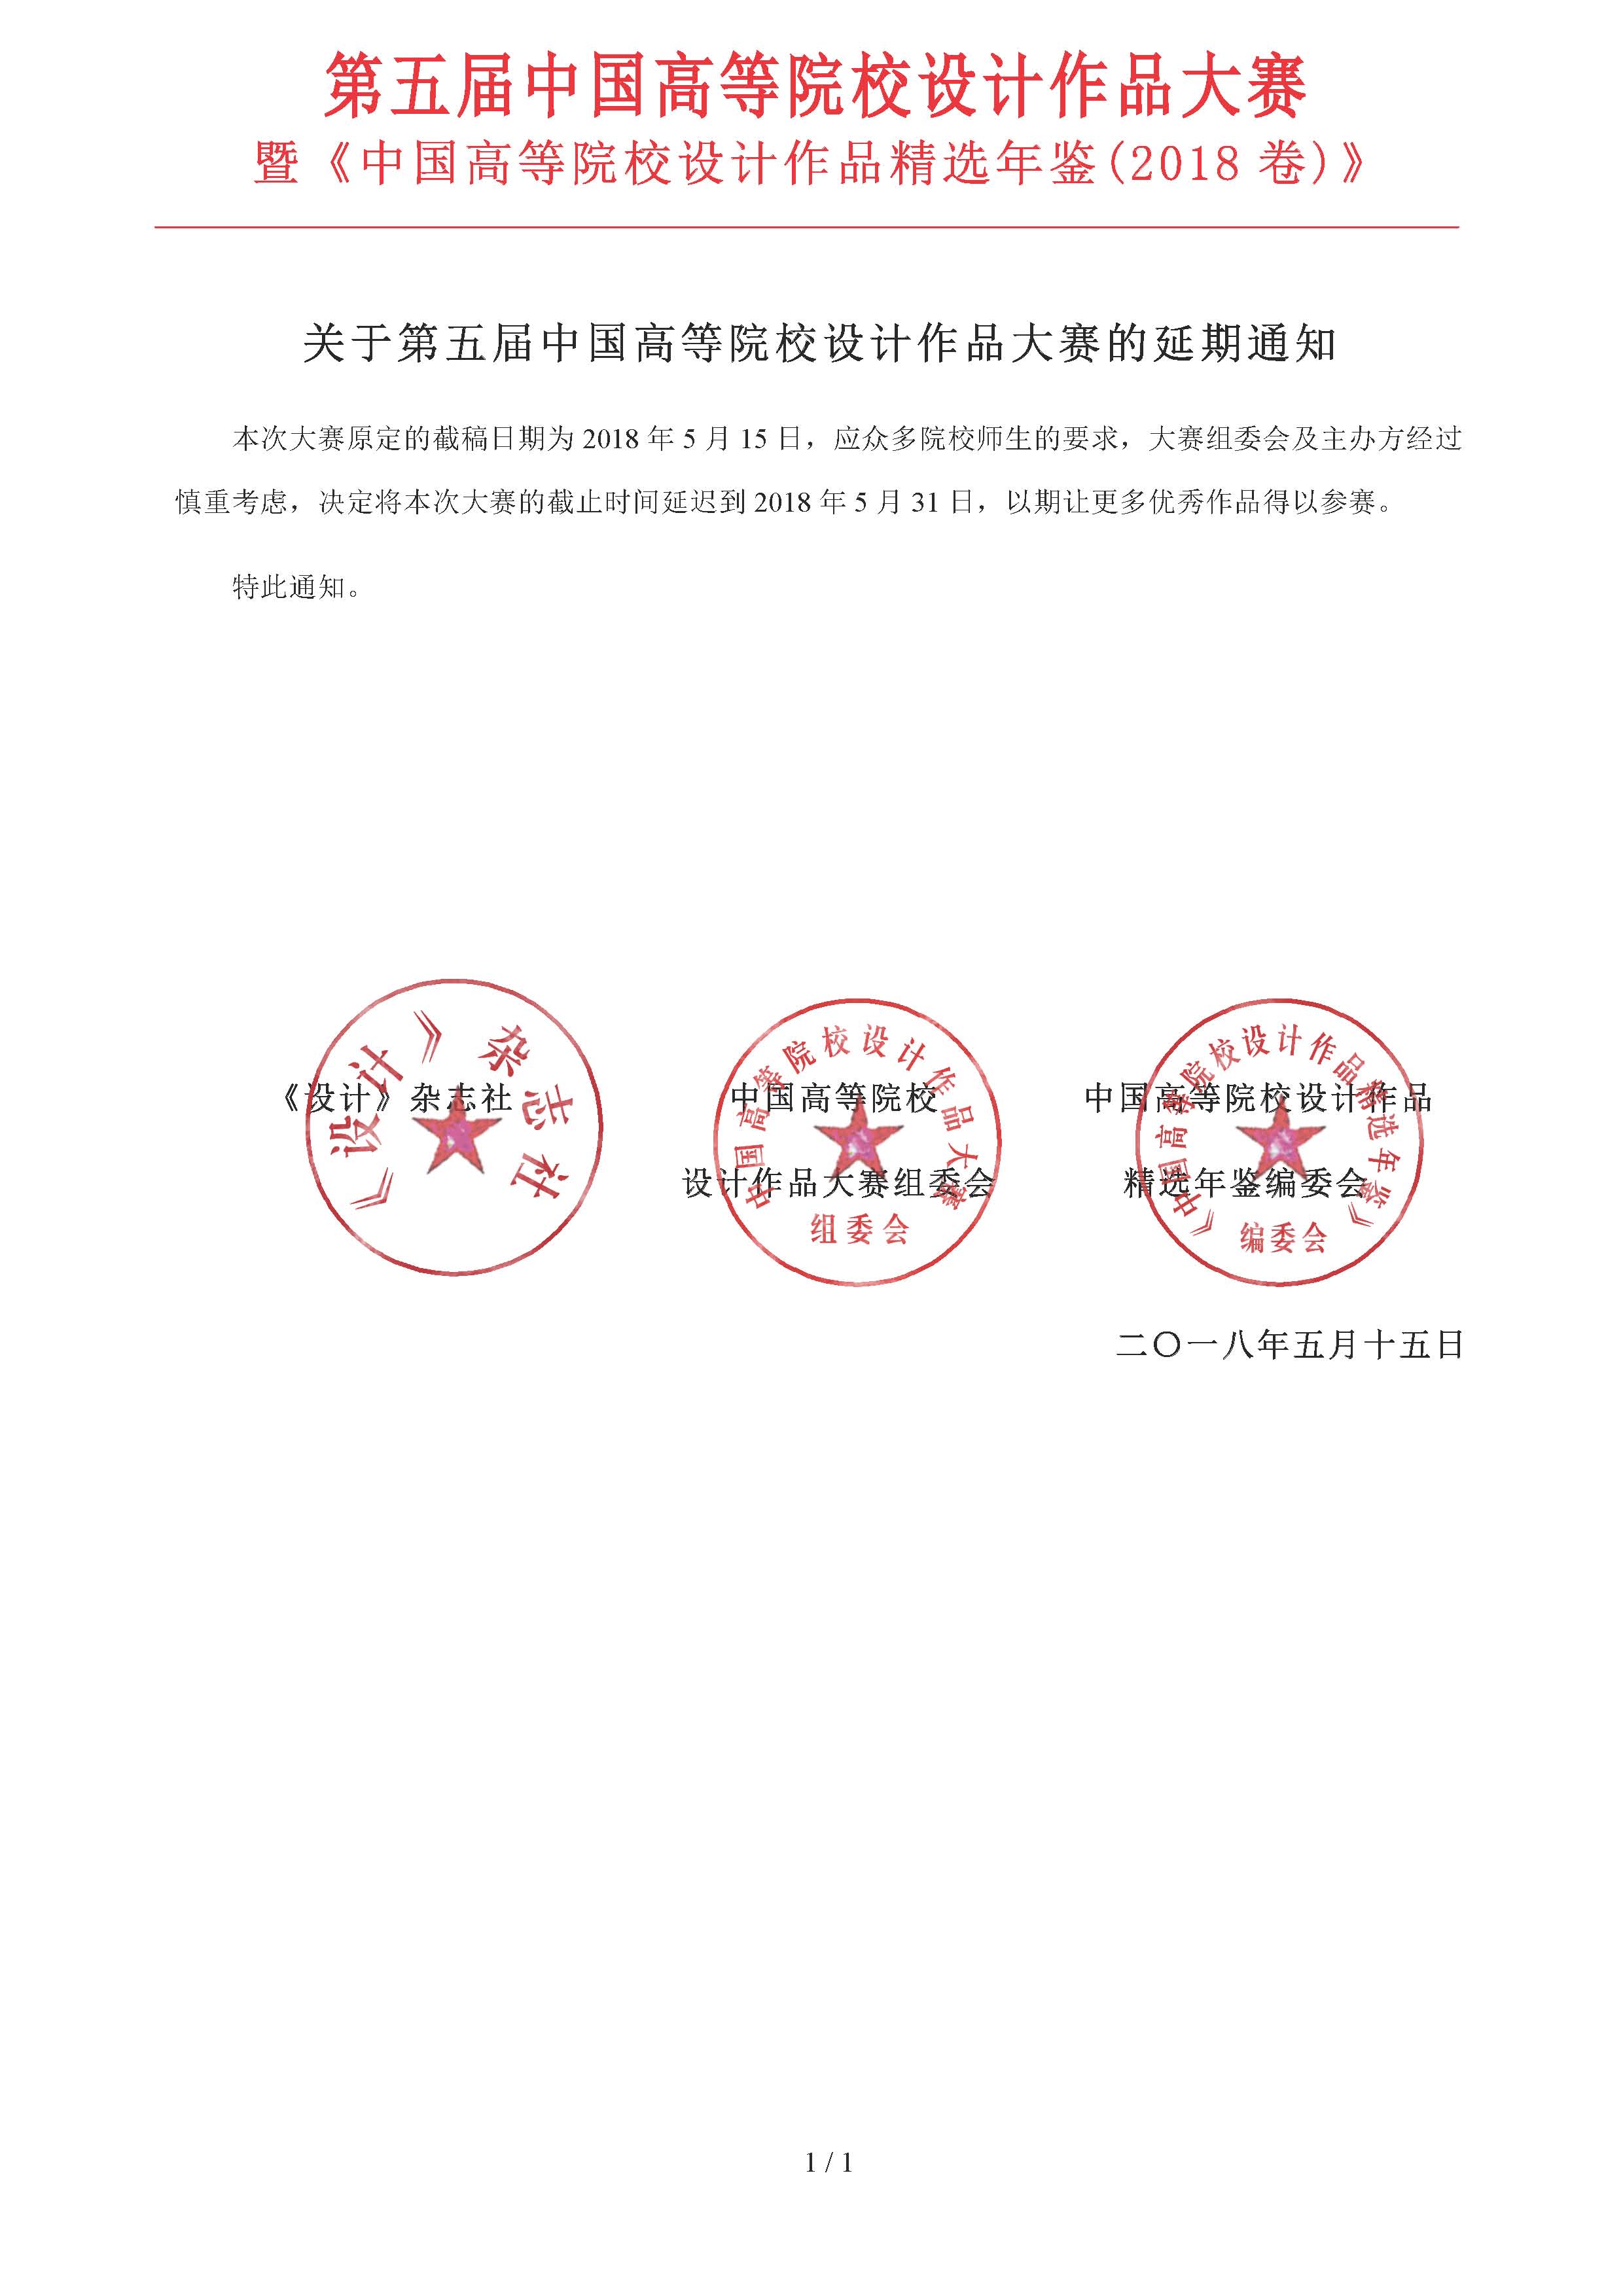 第五届中国高等院校设计作品大赛延期通知.jpg